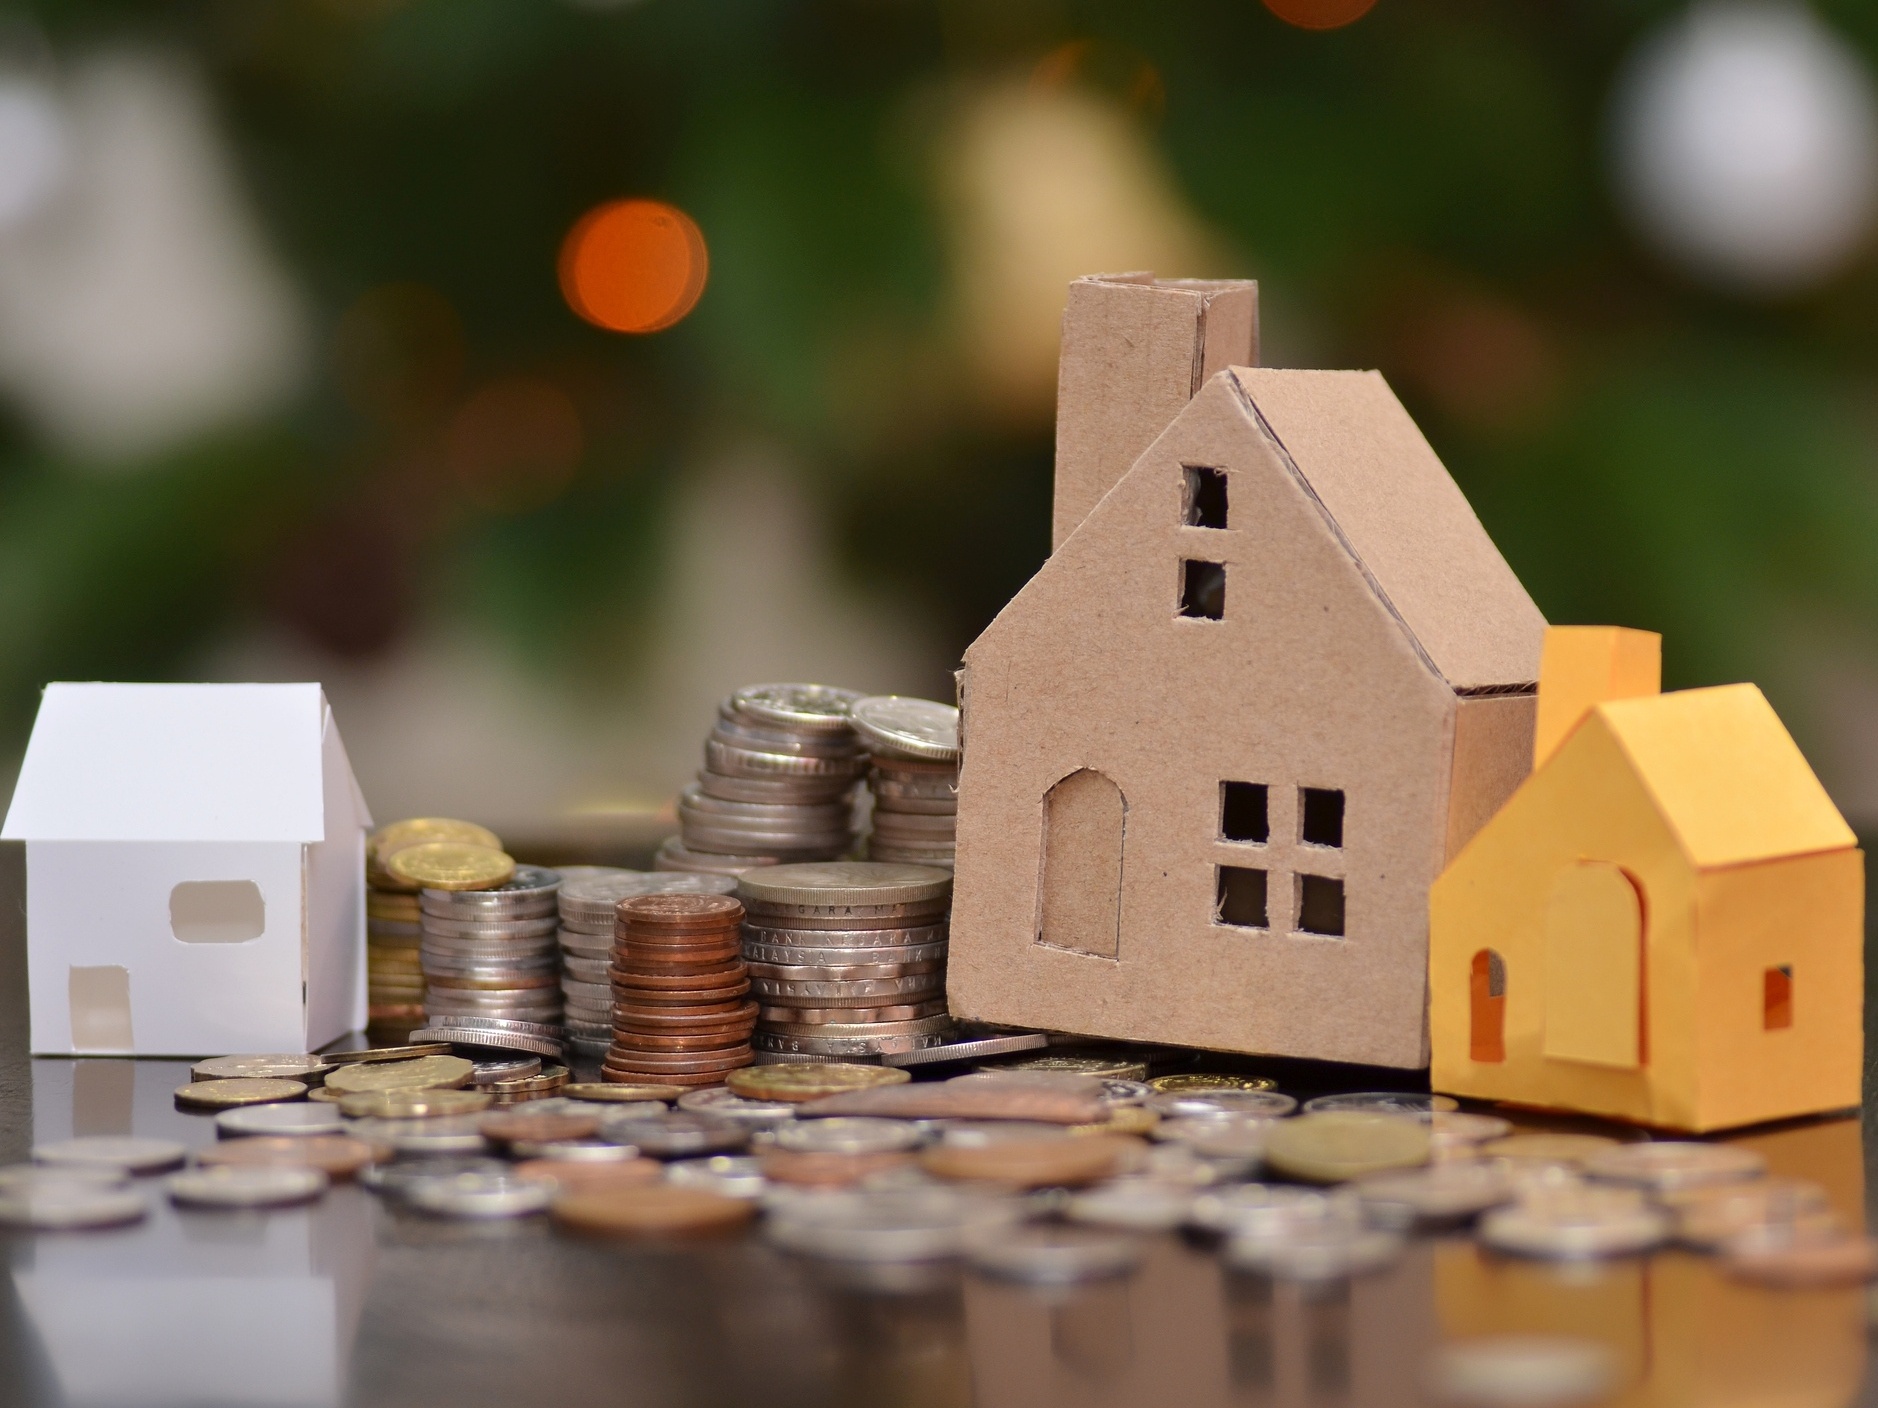 Fundos imobiliários são uma boa opção para ter uma renda passiva?